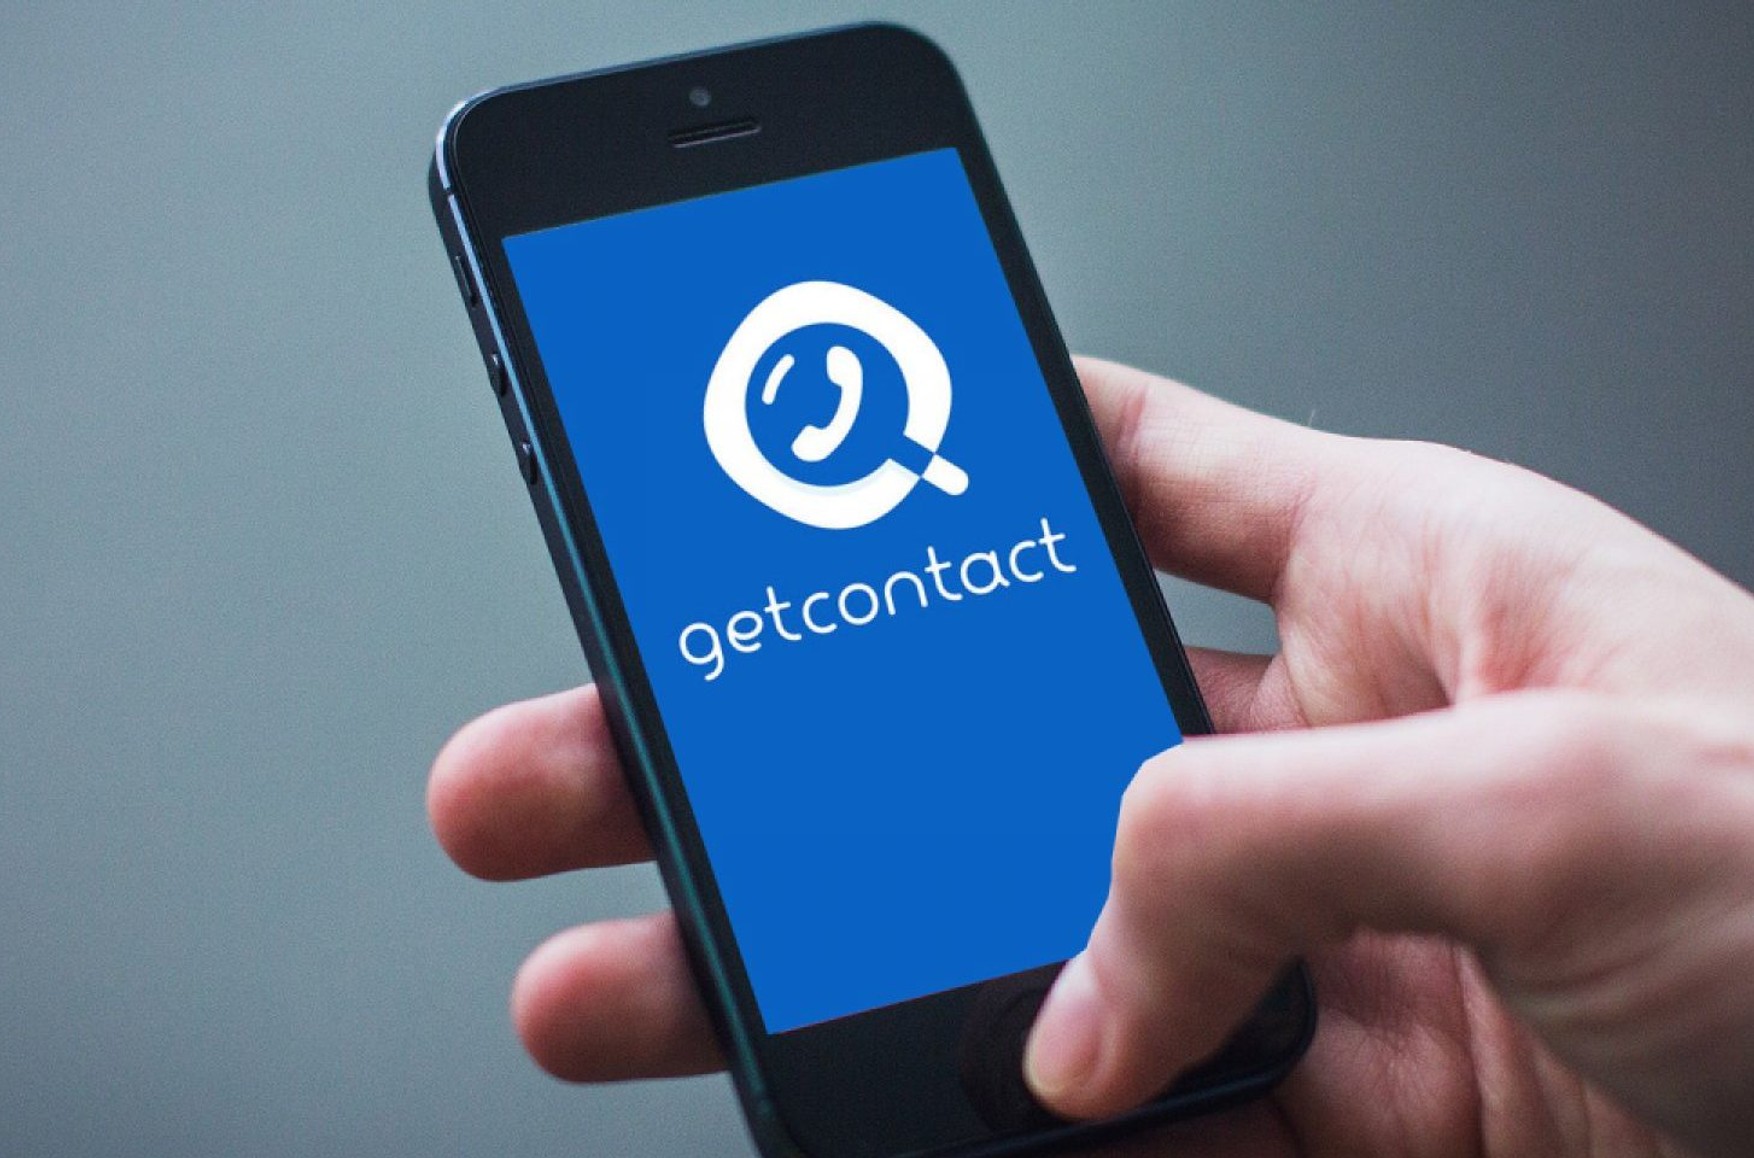 Влада Росії зобов'язали сервіс GetContact передавати дані користувачів спецслужбам